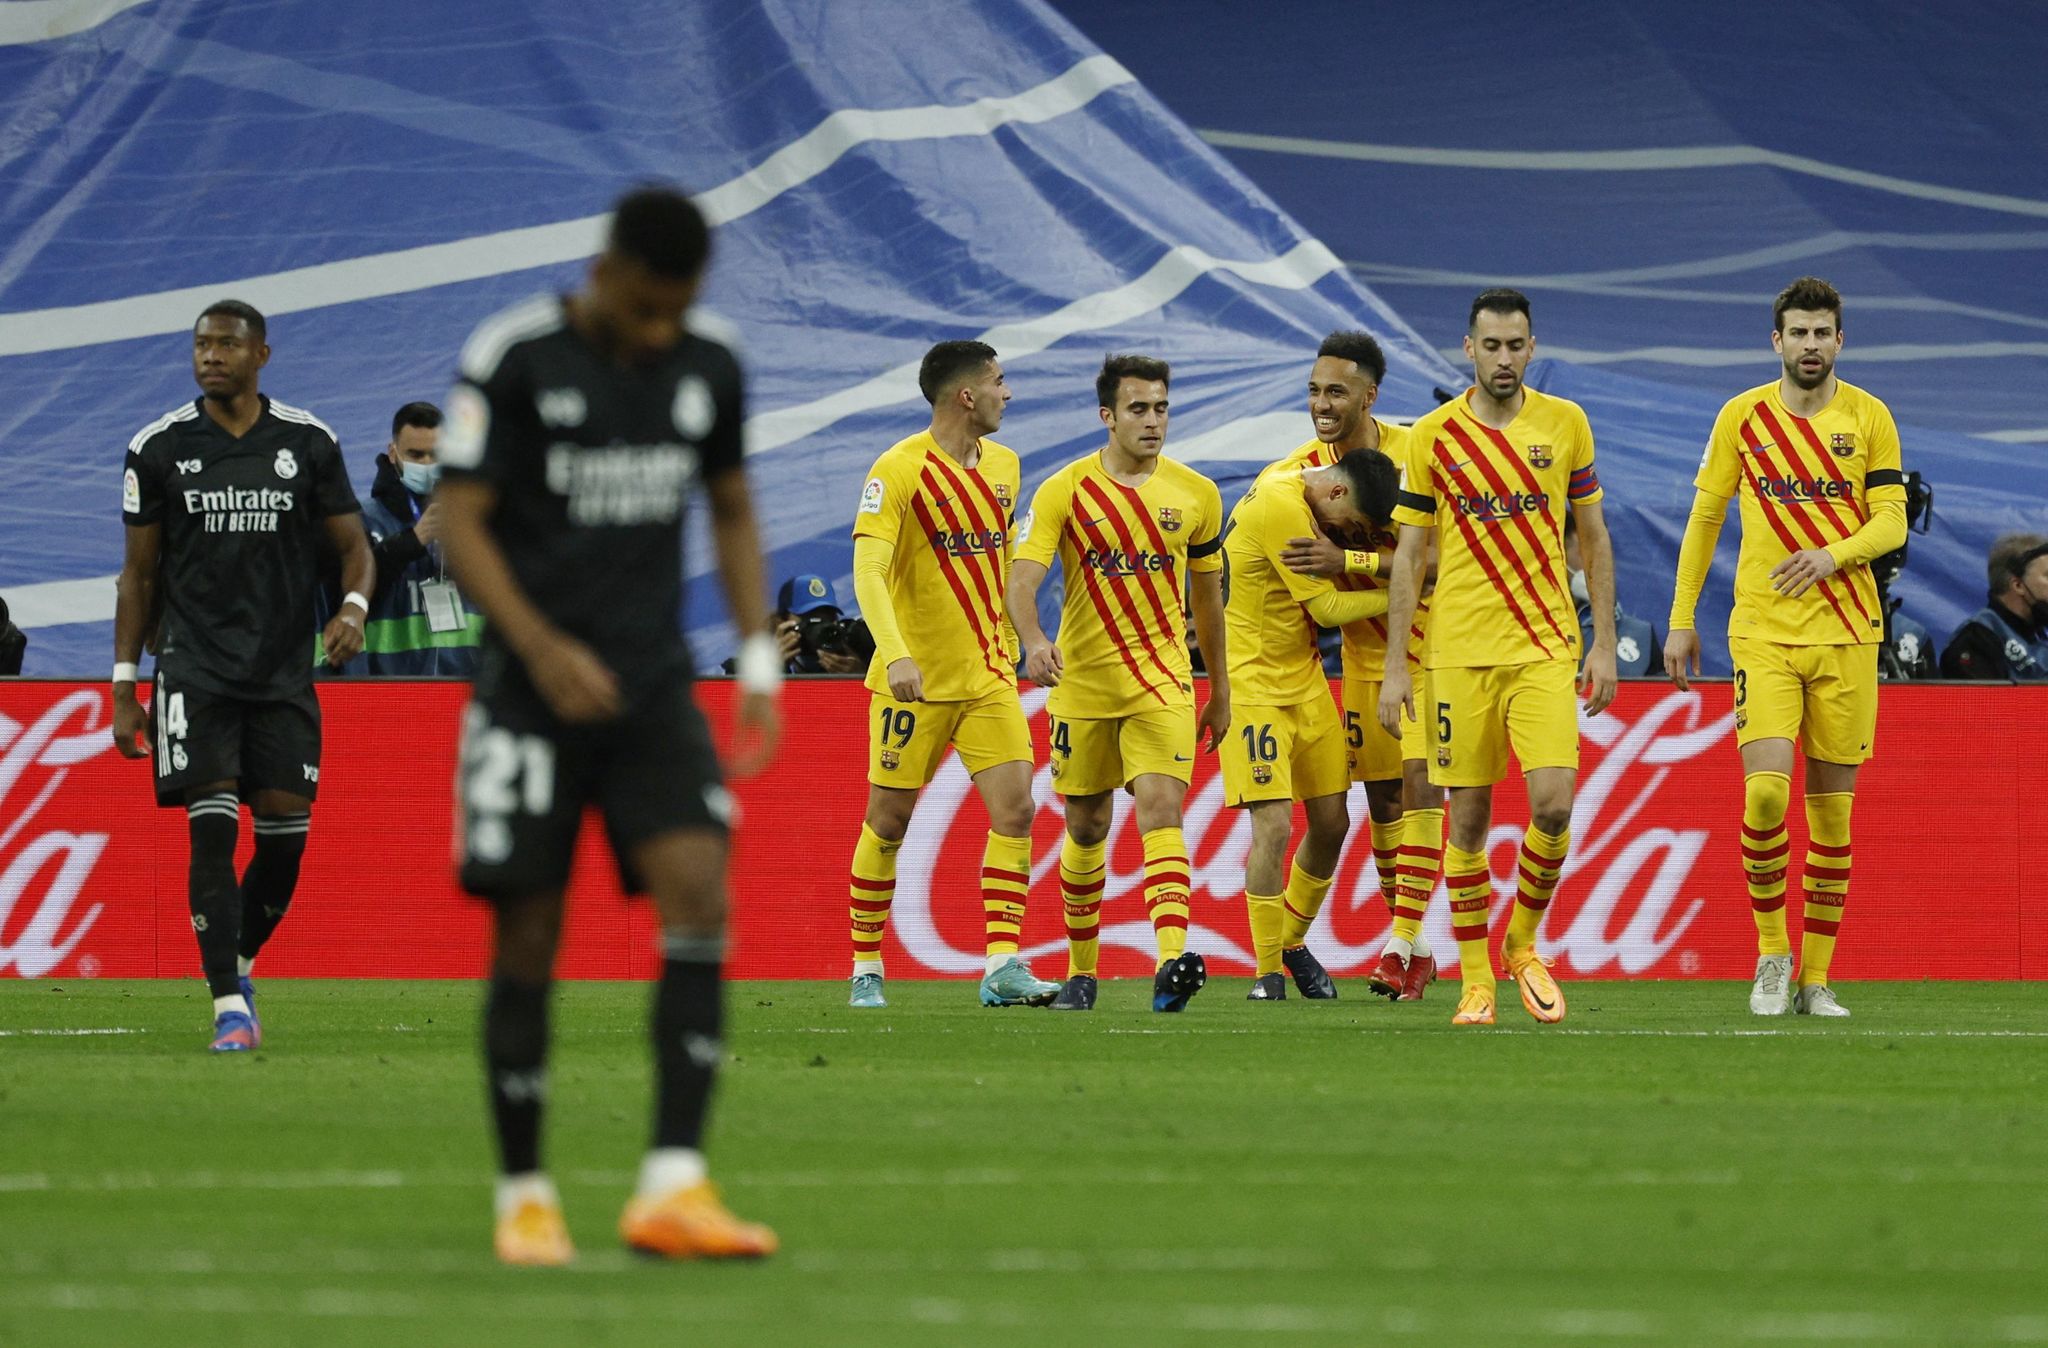 El plantel Culé se quedo con el clásico español por La Liga jugando de visitante, dejó en la lona al Madrid con una goleada.